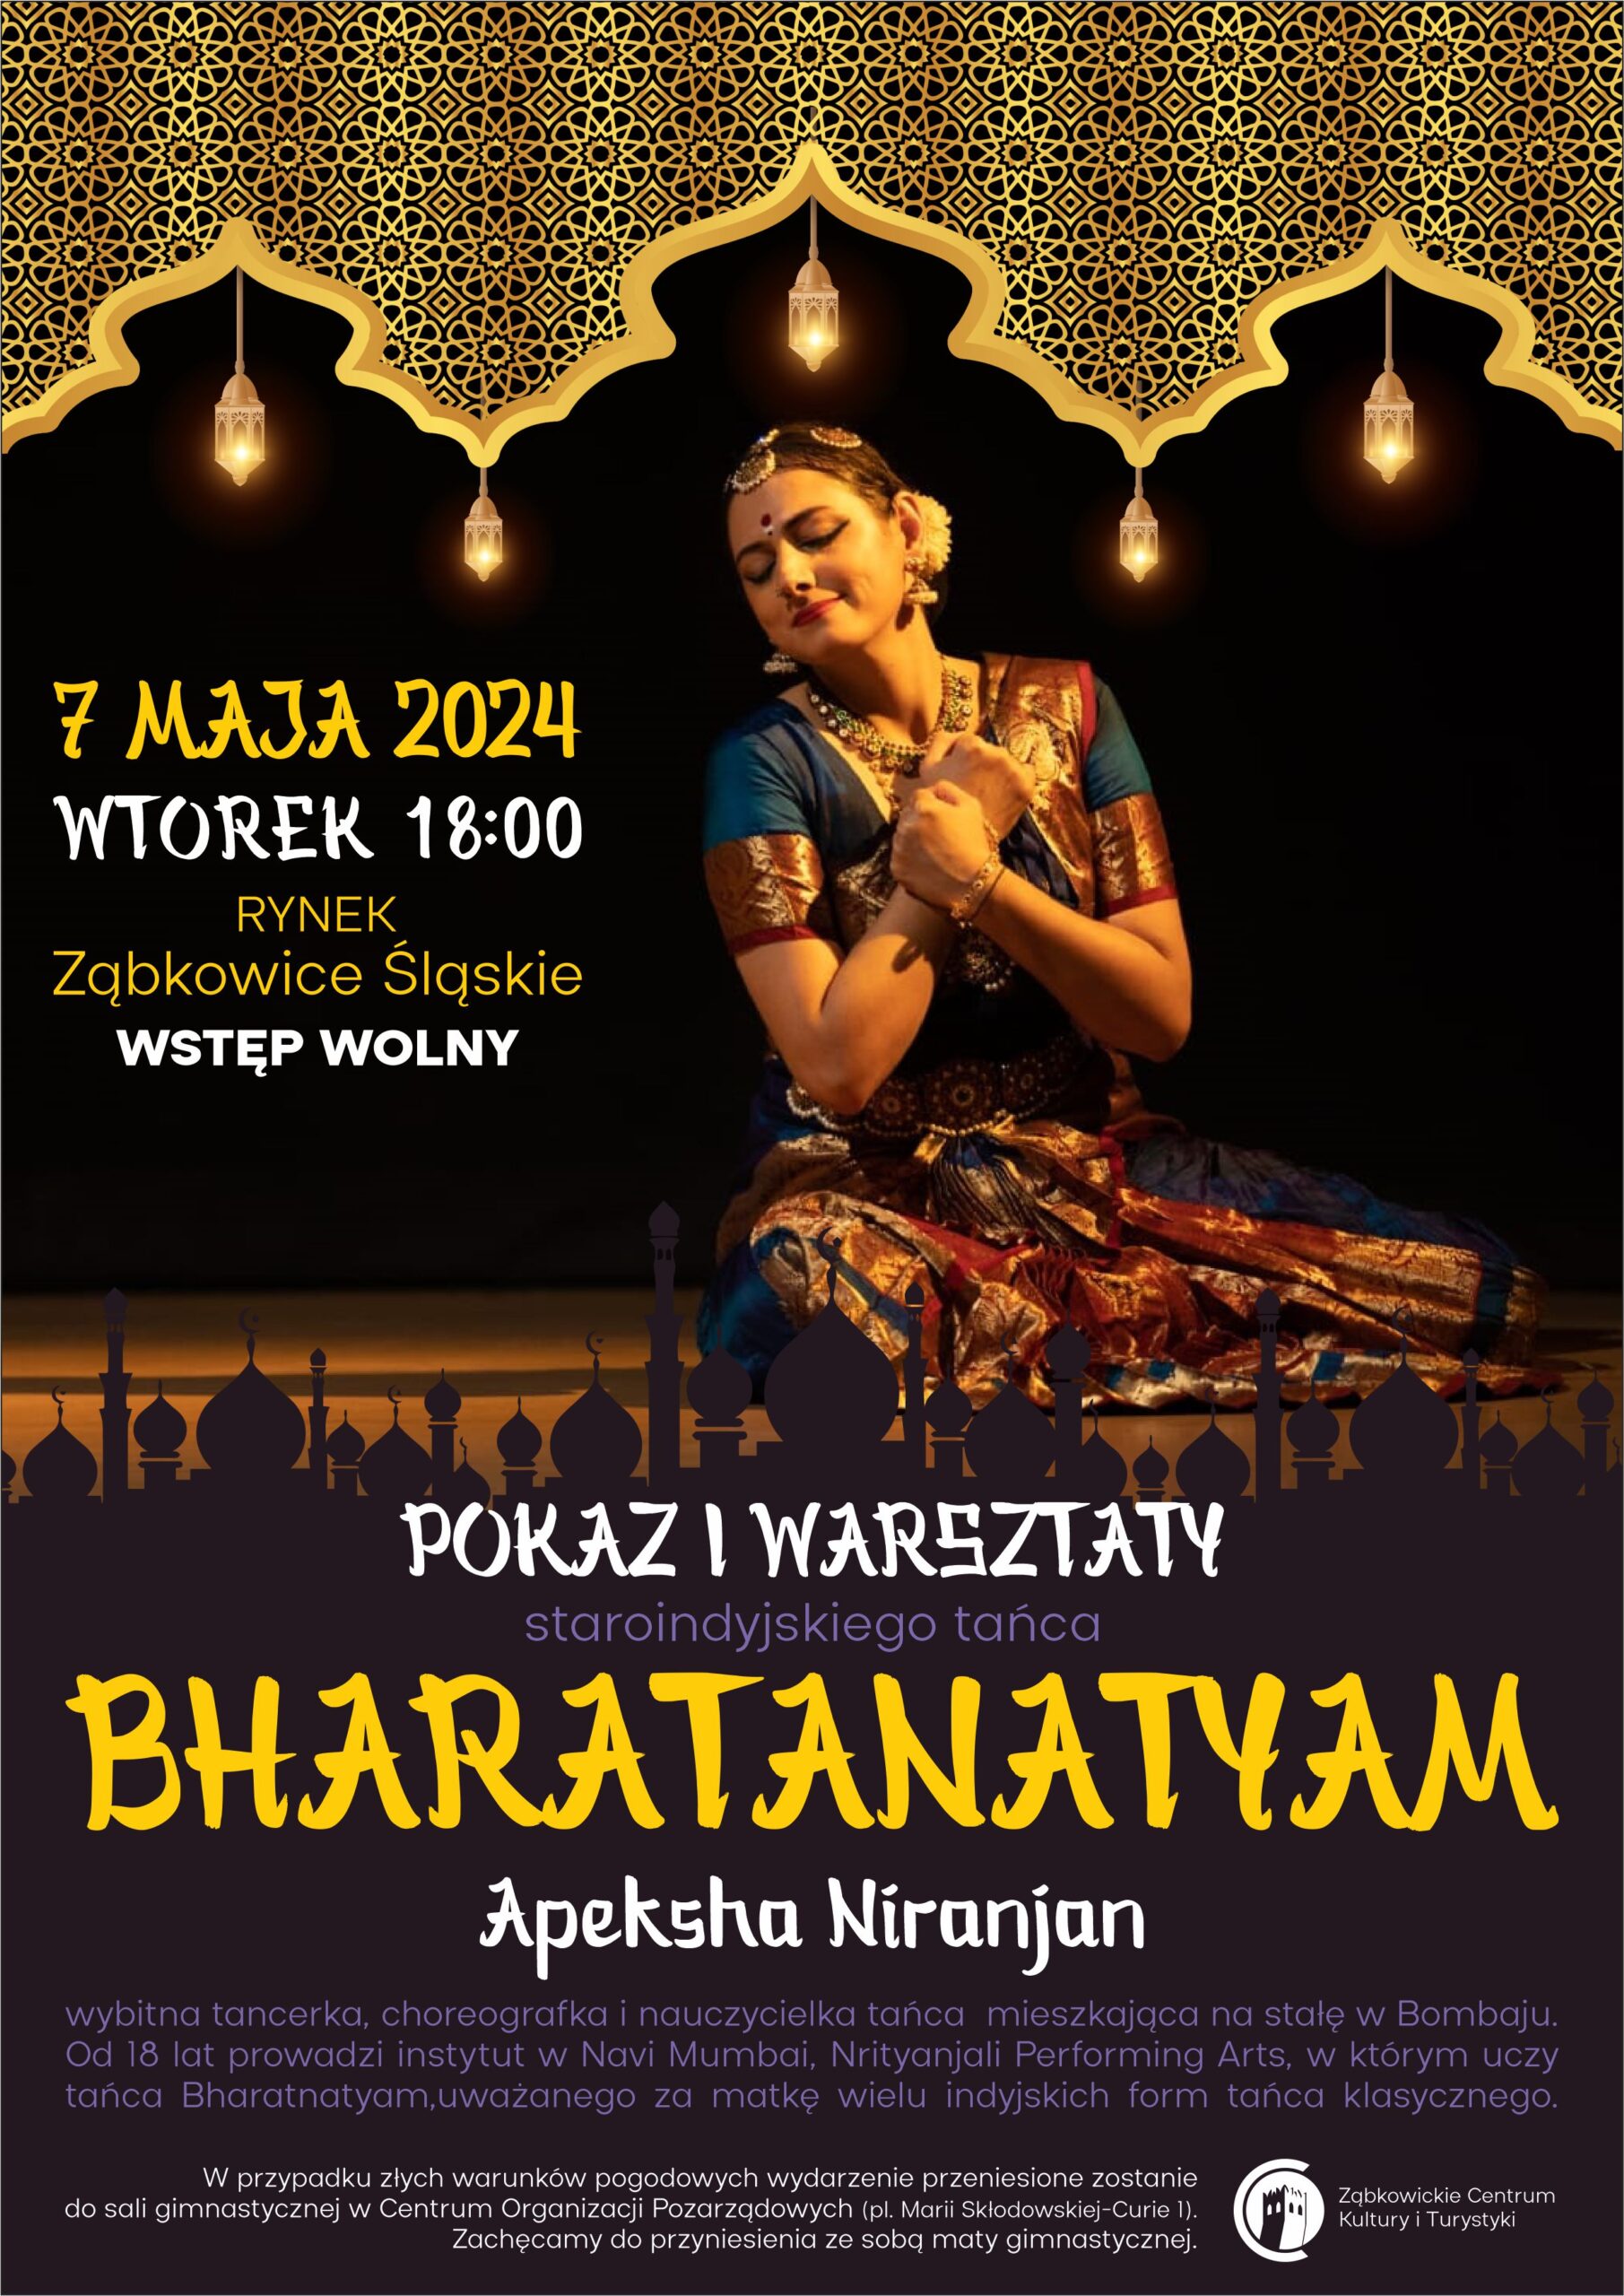 Plakat informacyjny o pokazie i warsztatach staroindyjskiego tańca prowadzonego przez Apekshę Niranjan 7 maja 2024 roku o godzinie 18:00 na rynku w Ząbkowicach Śląskich. Na plakacie znajduje się uśmiechnięta kobieta w tradycyjnym indyjskim stroju.